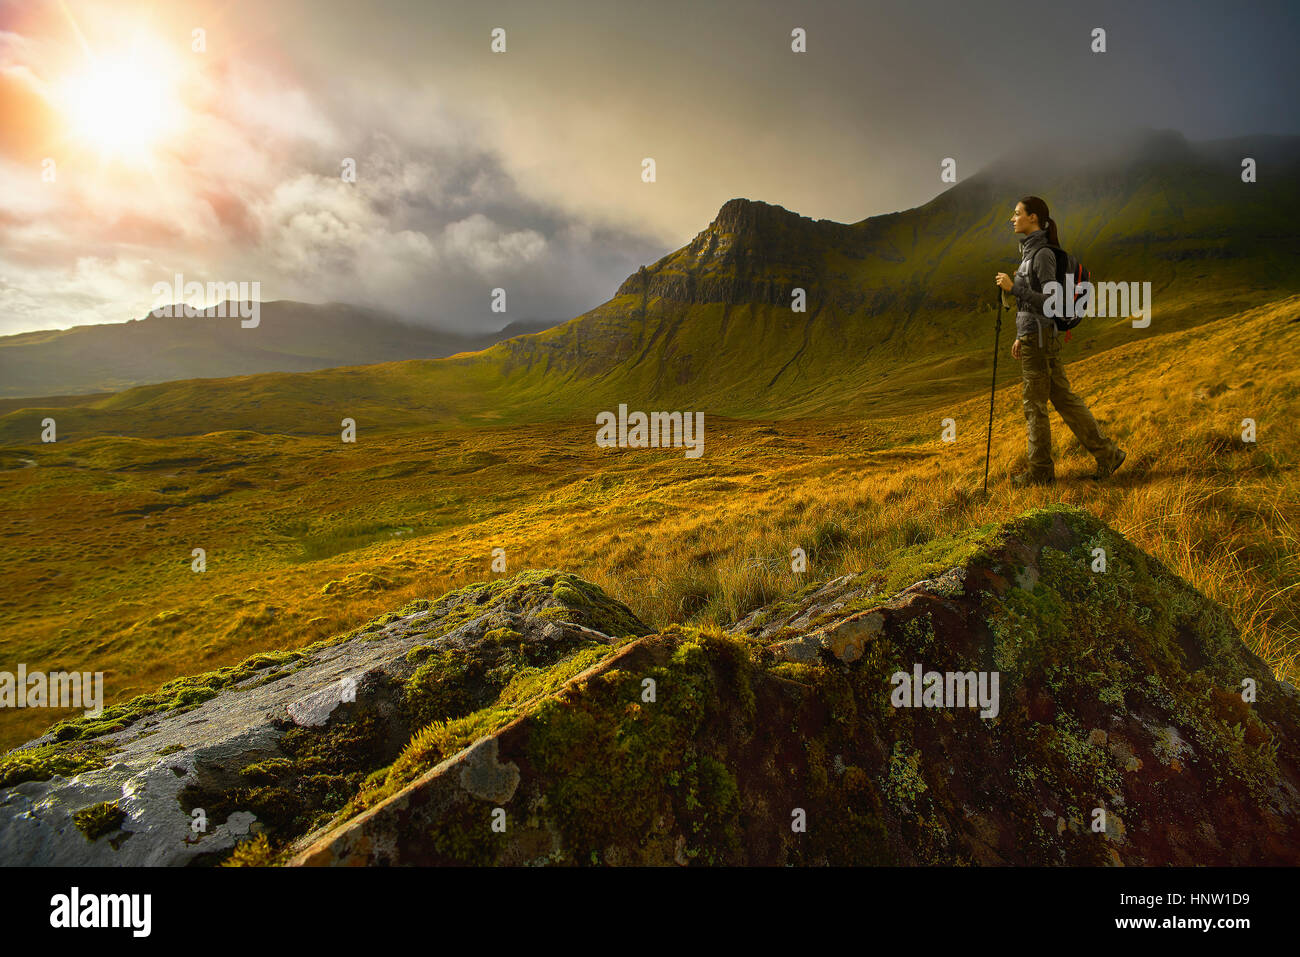 Caucasian woman hiking dans paysage de montagne verte Banque D'Images